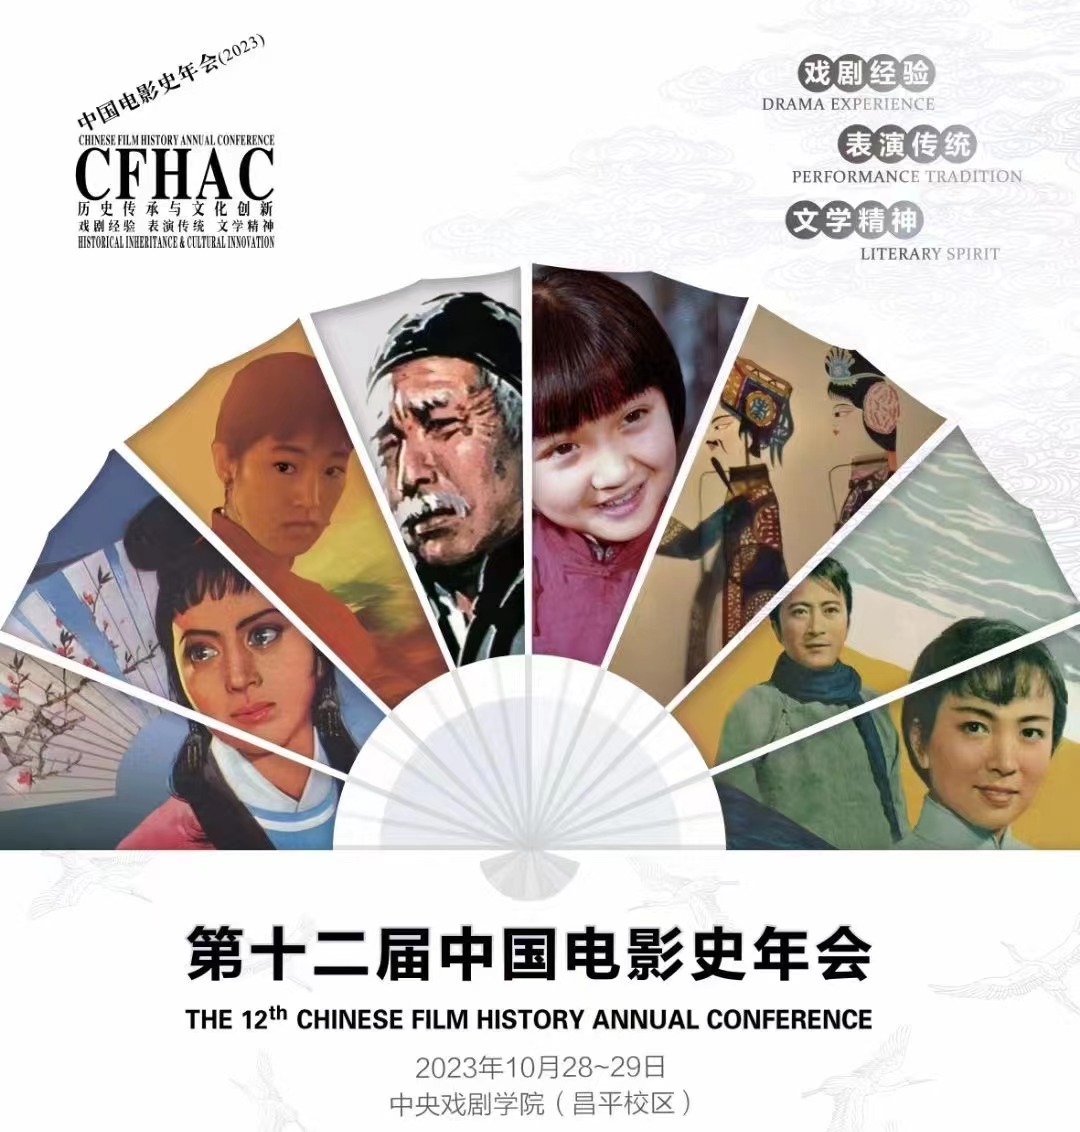 历史传承与文化创新：戏剧经验、表演传统、文学精神——第十二届中国电影史年会顺利召开